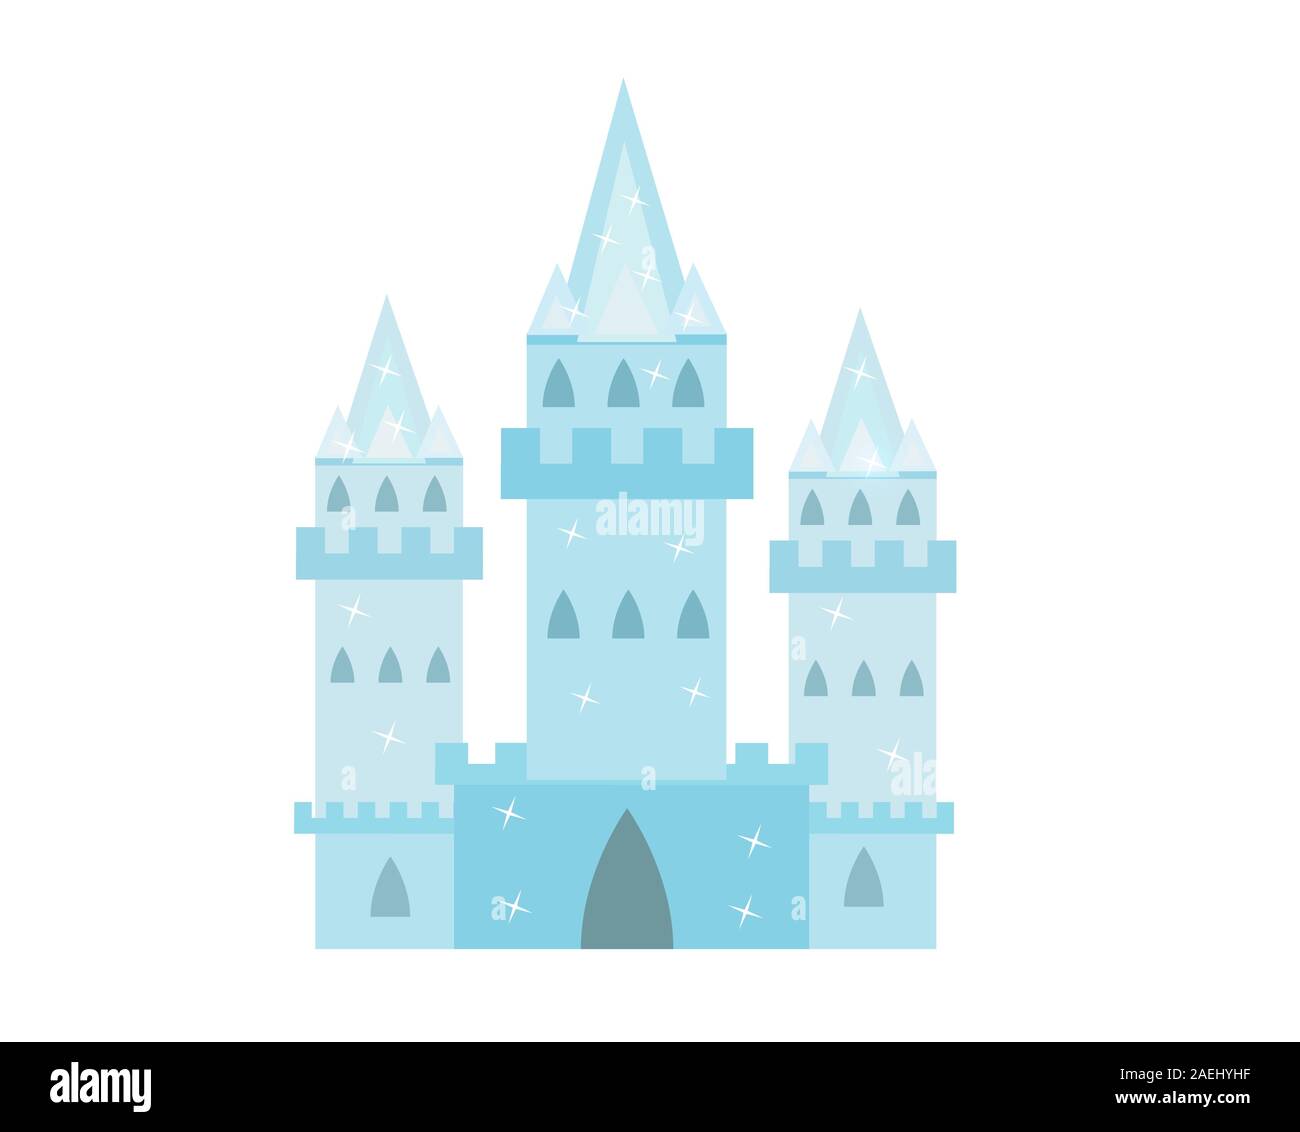 Ice Castle Prinzessinnen, Schnee palace cartoon Style Icon. Auf einem weißen Hintergrund. Vector Illustration Stock Vektor